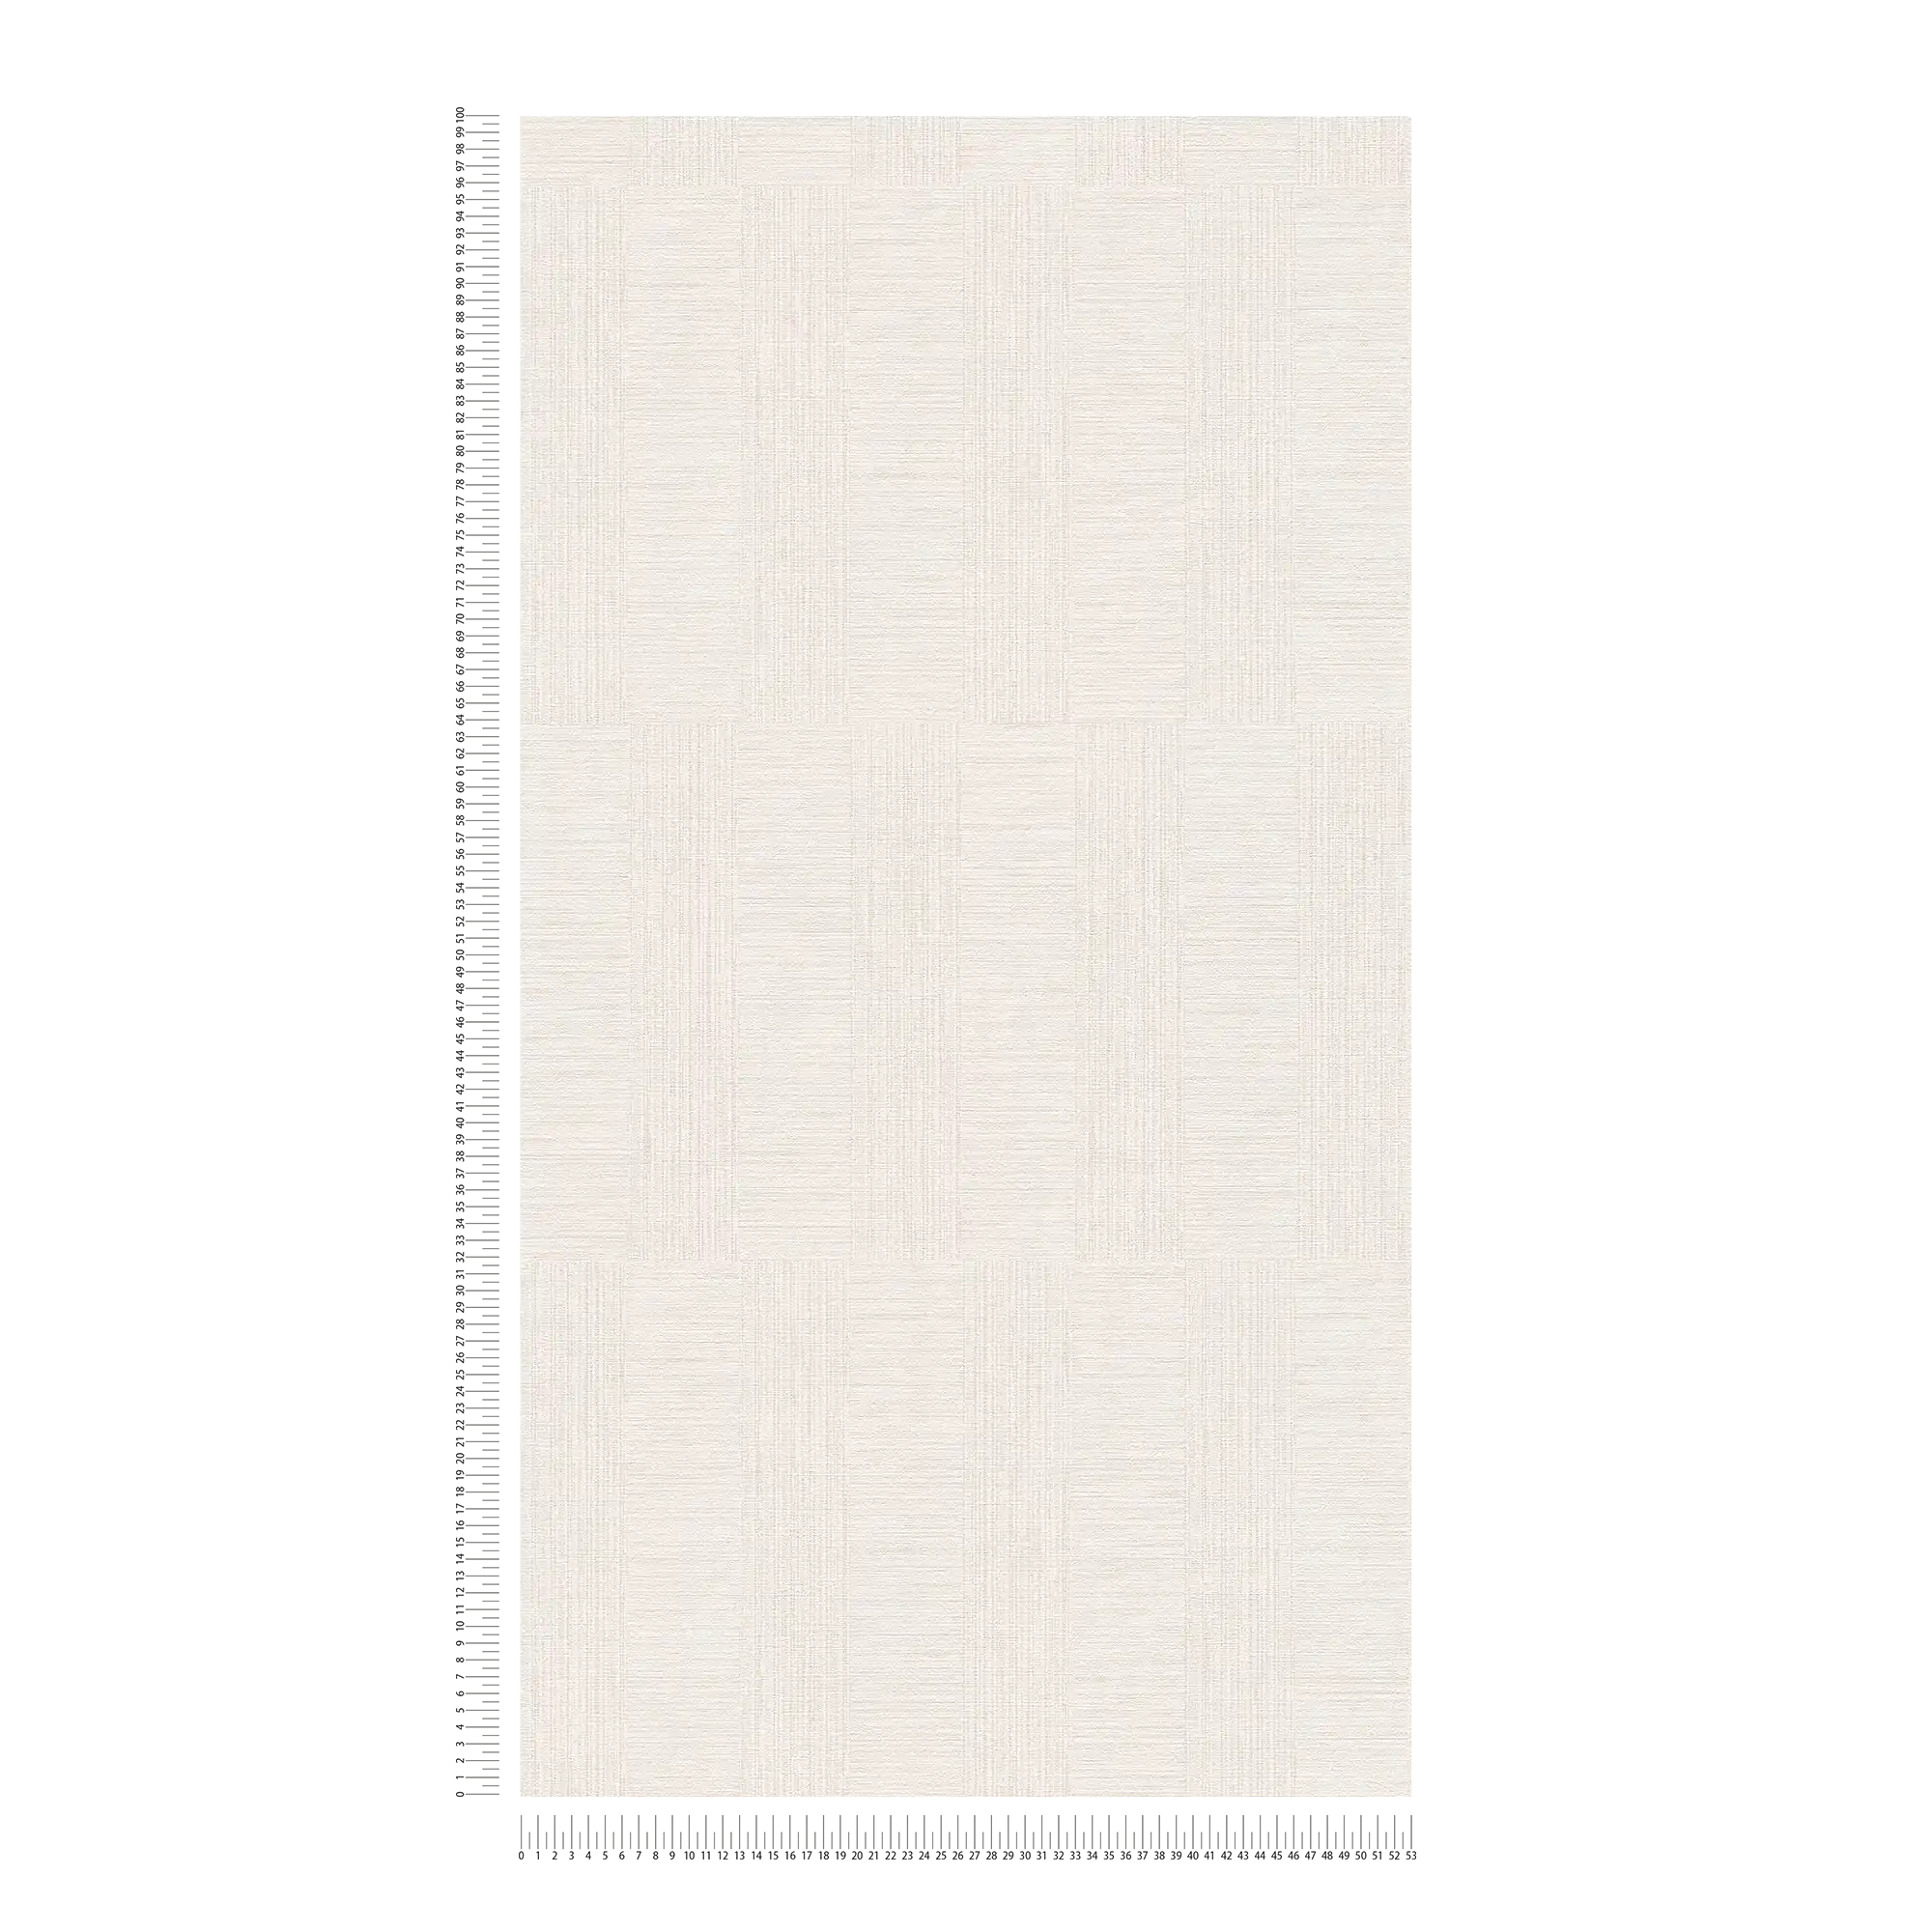             Papier peint chiné avec motif rectangulaire style rétro - crème, métallique
        